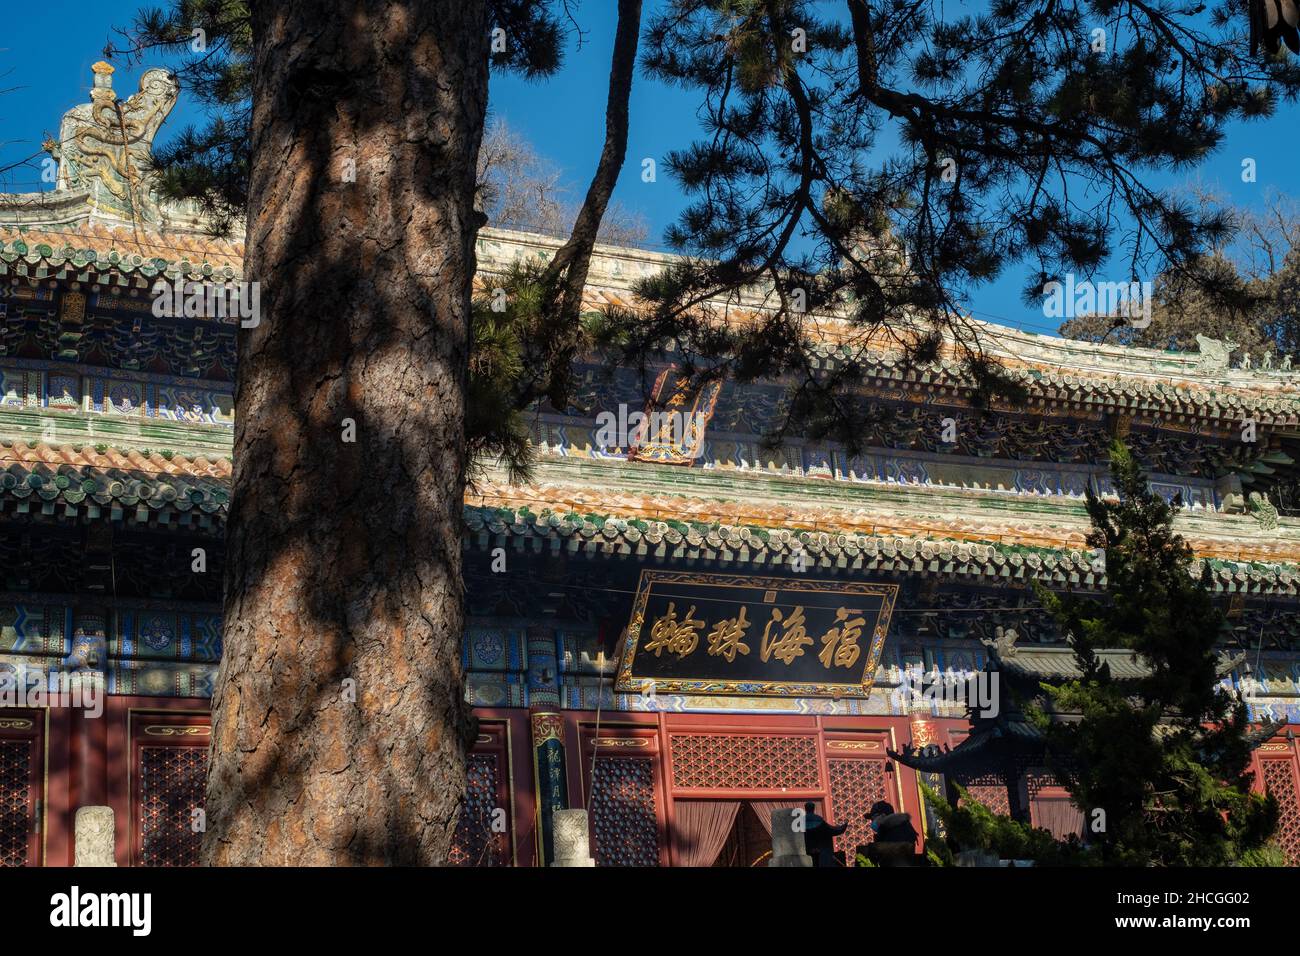 Mahavira Hall nel Tempio di Tanzhe situato nelle colline occidentali, un'area montagnosa nella Pechino occidentale, Cina. 29-dic-2021 Foto Stock